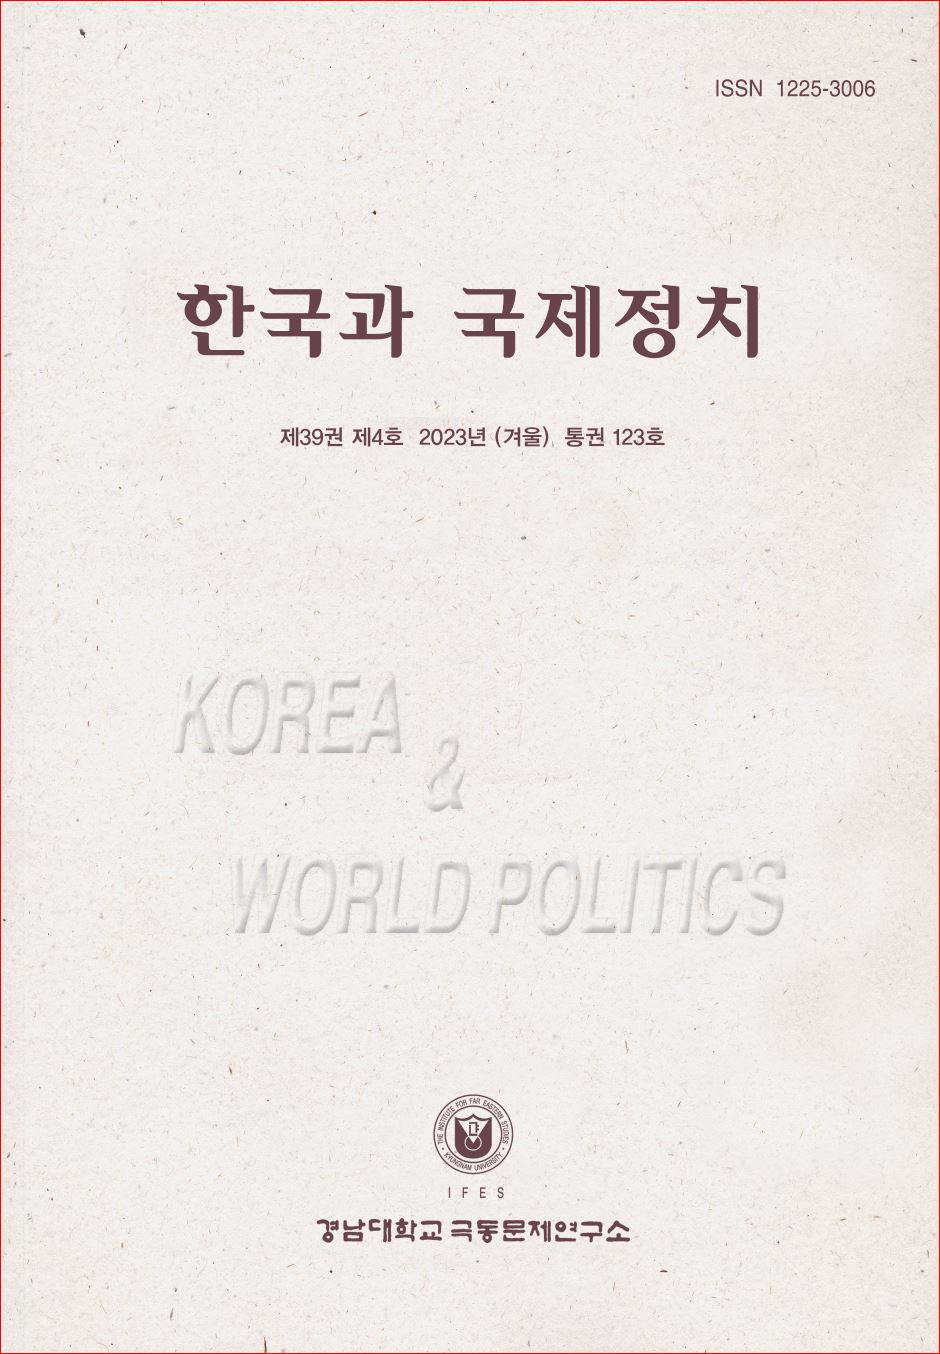 Korea and World Politics, Vol.39, No.4